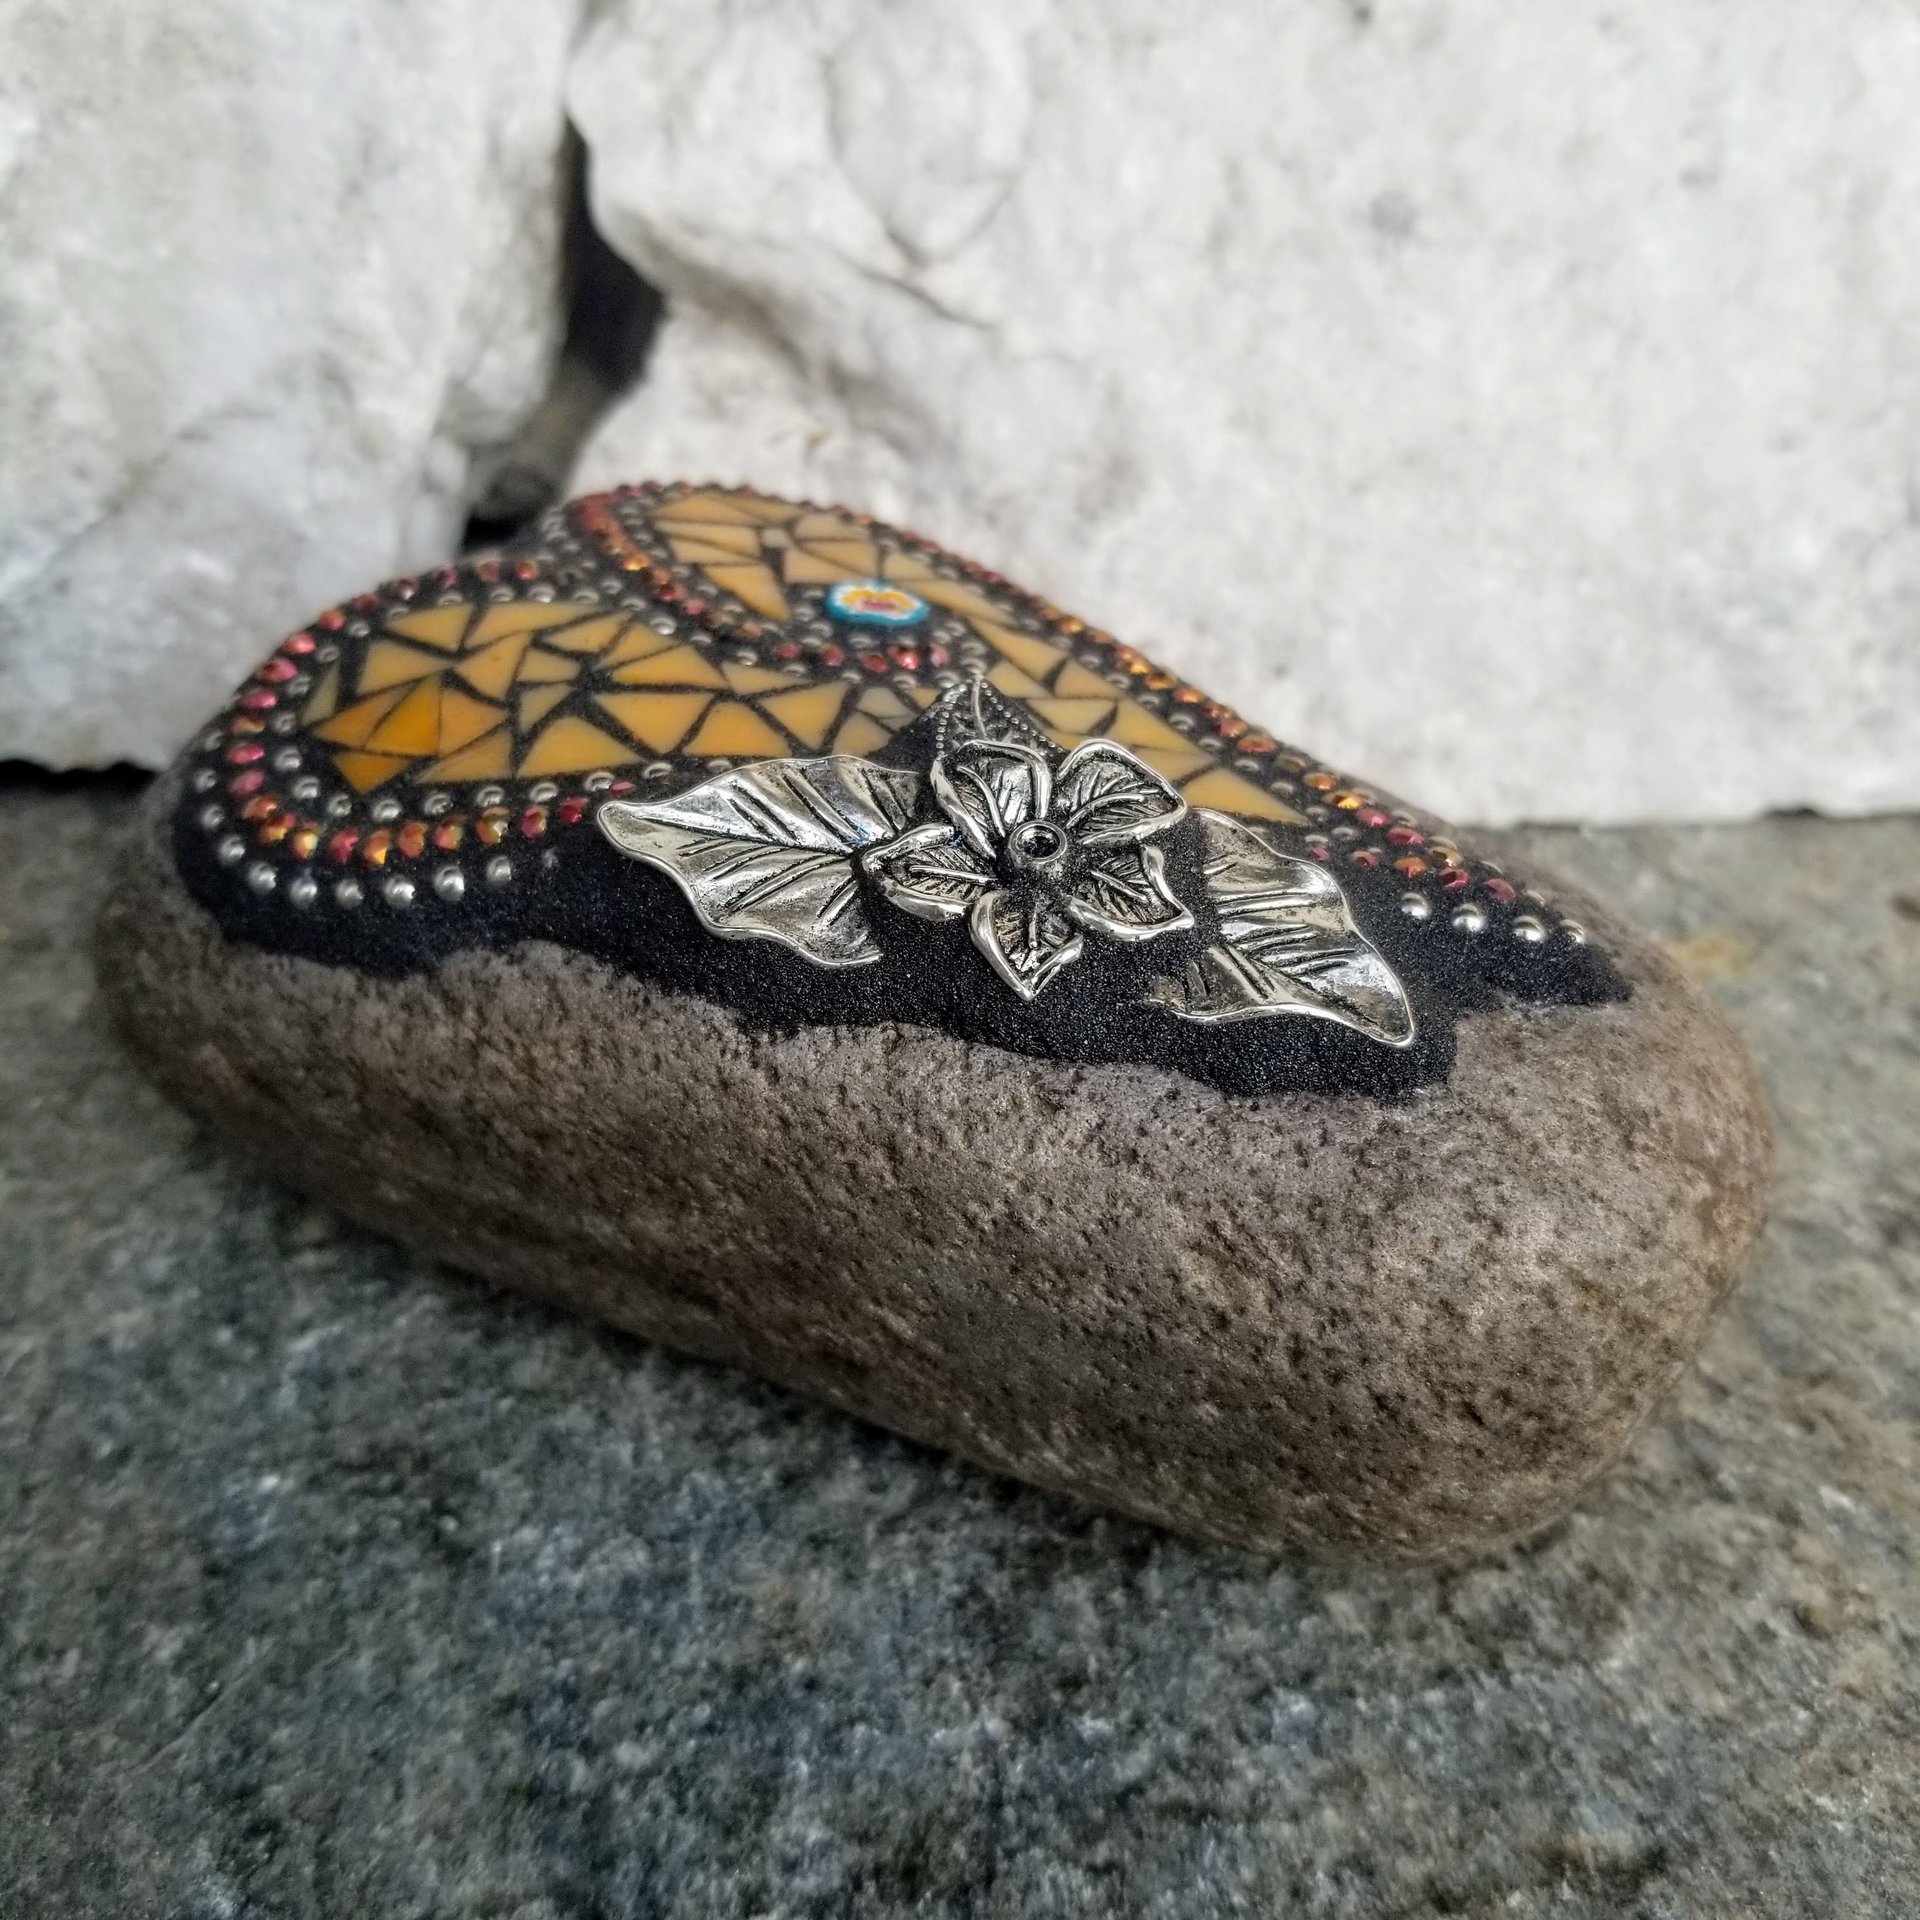 Orange Heart Garden Stone, Mosaic, Garden Decor Paperweight